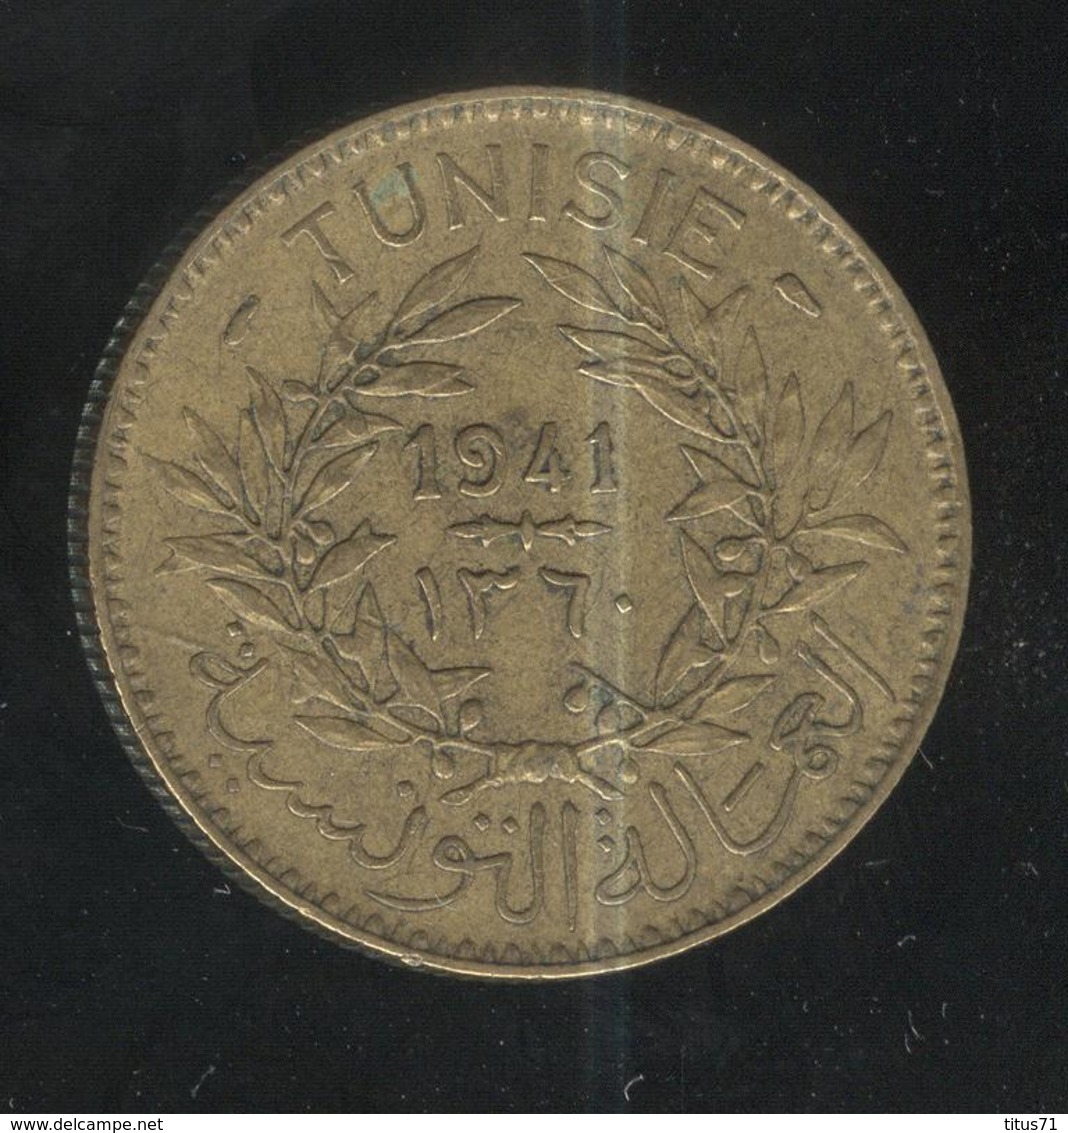 2 Francs Tunisie 1941 - Tunisie